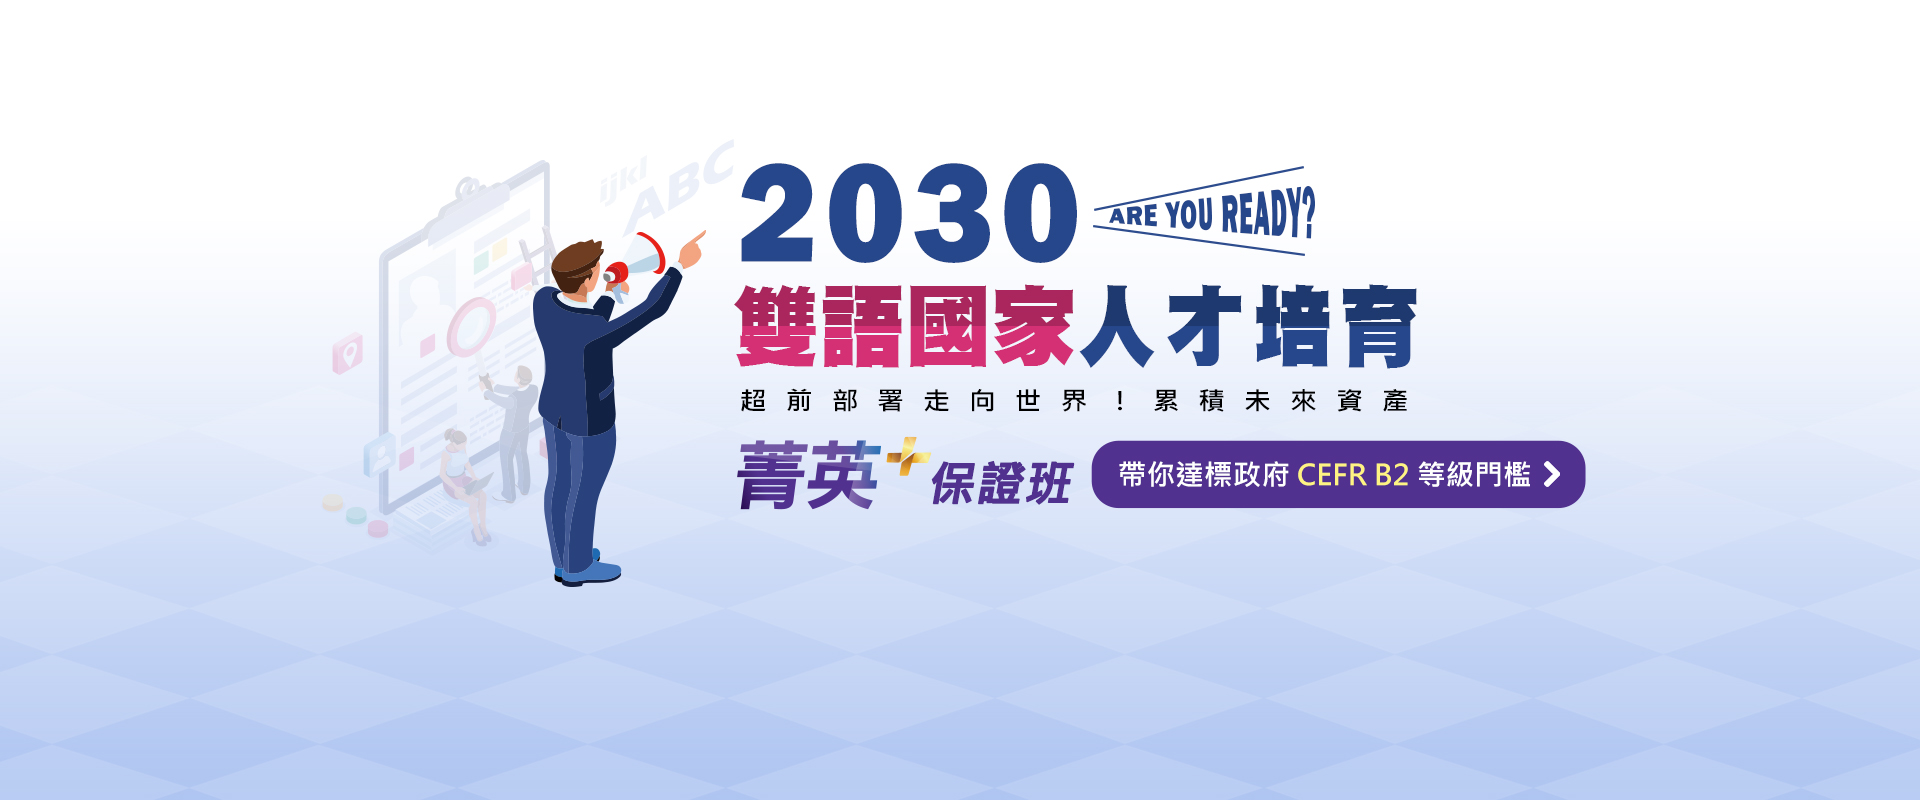 2030雙語國家人才培育 Are you ready？
                         